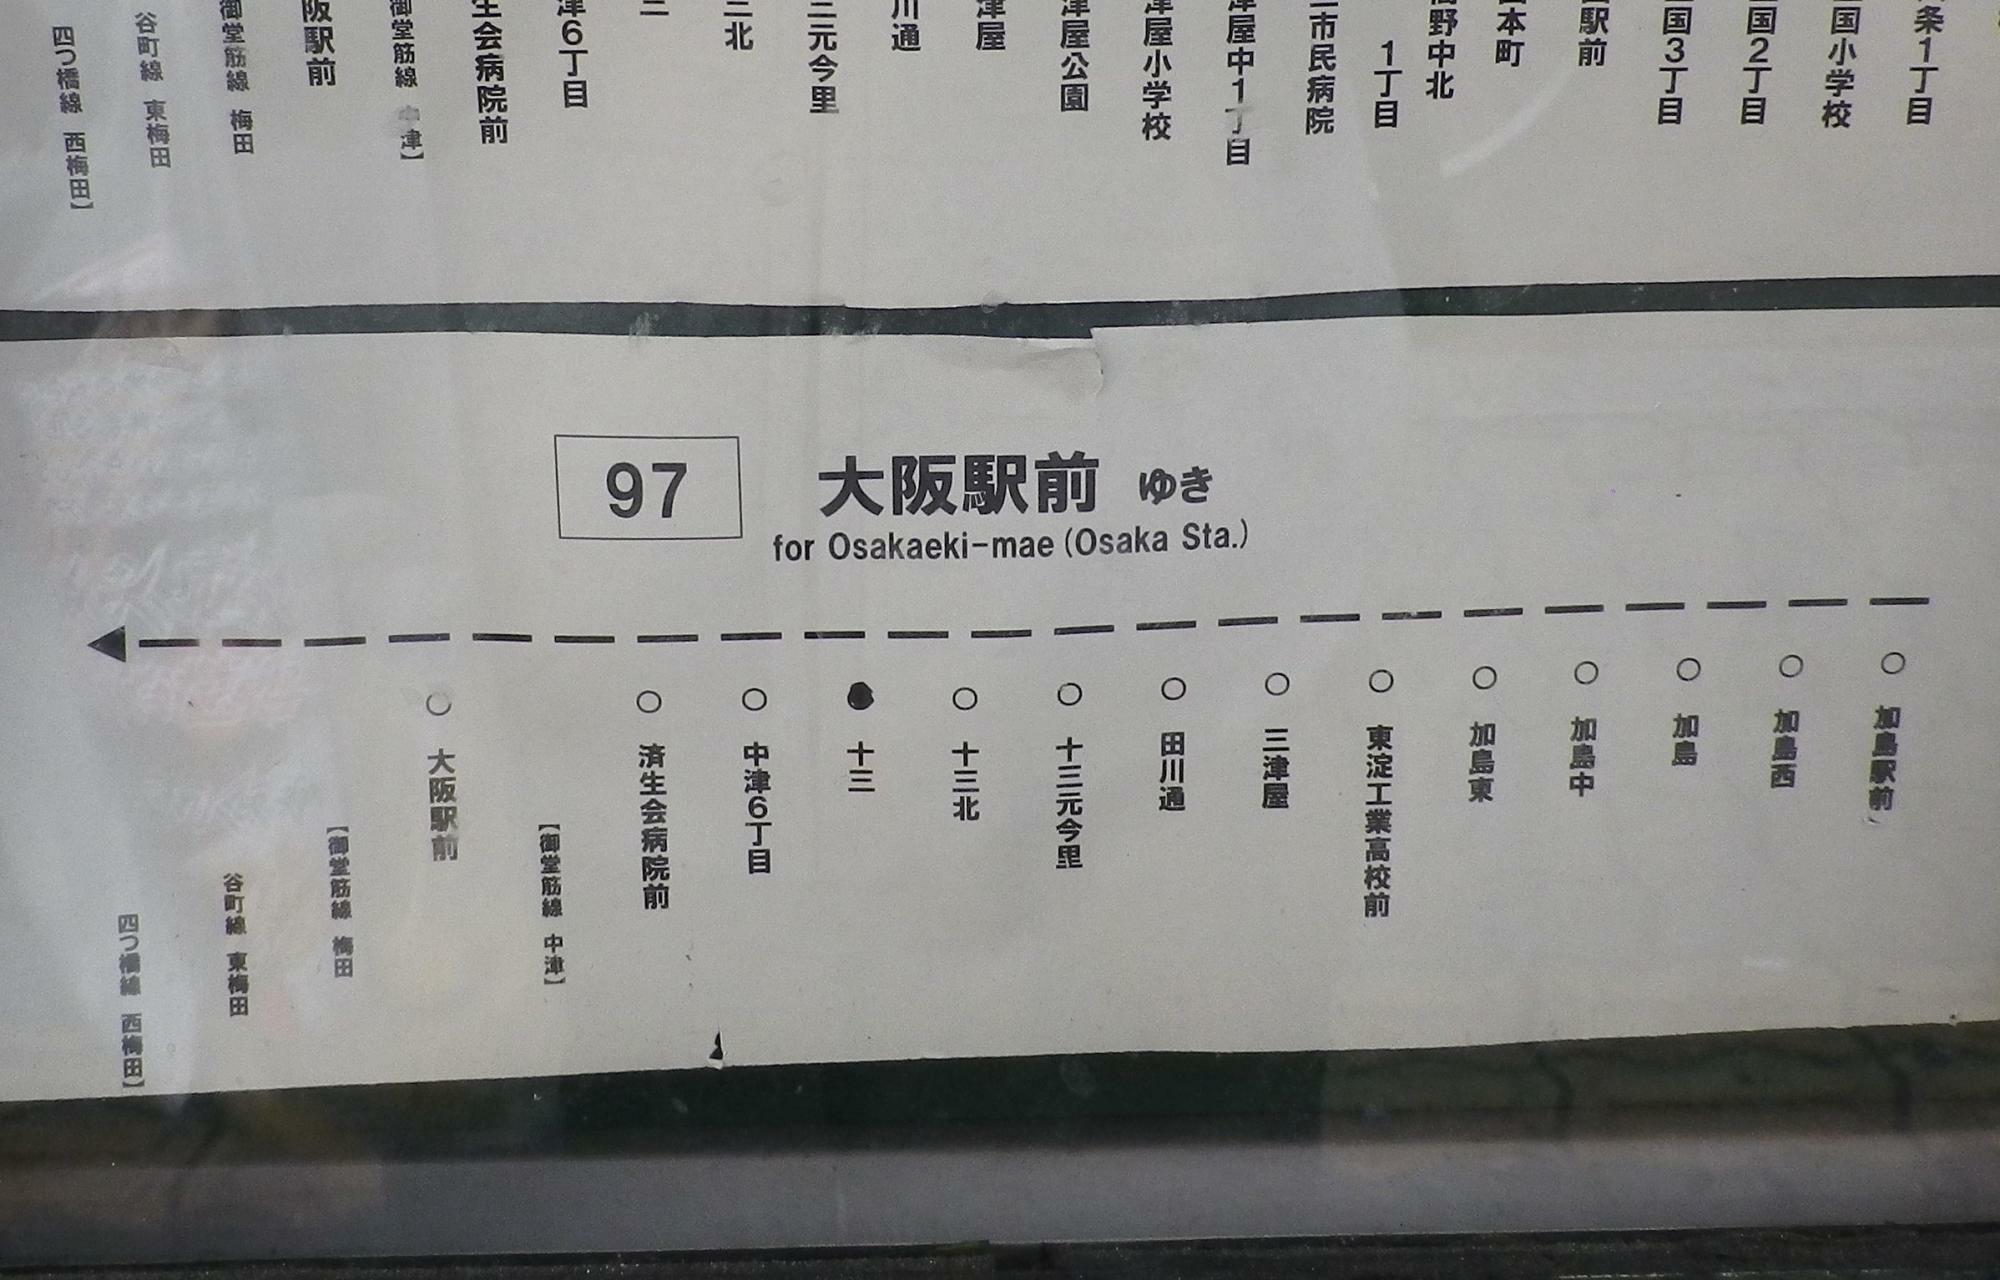 阪急十三駅近くの停留所に掲示されている路線図。